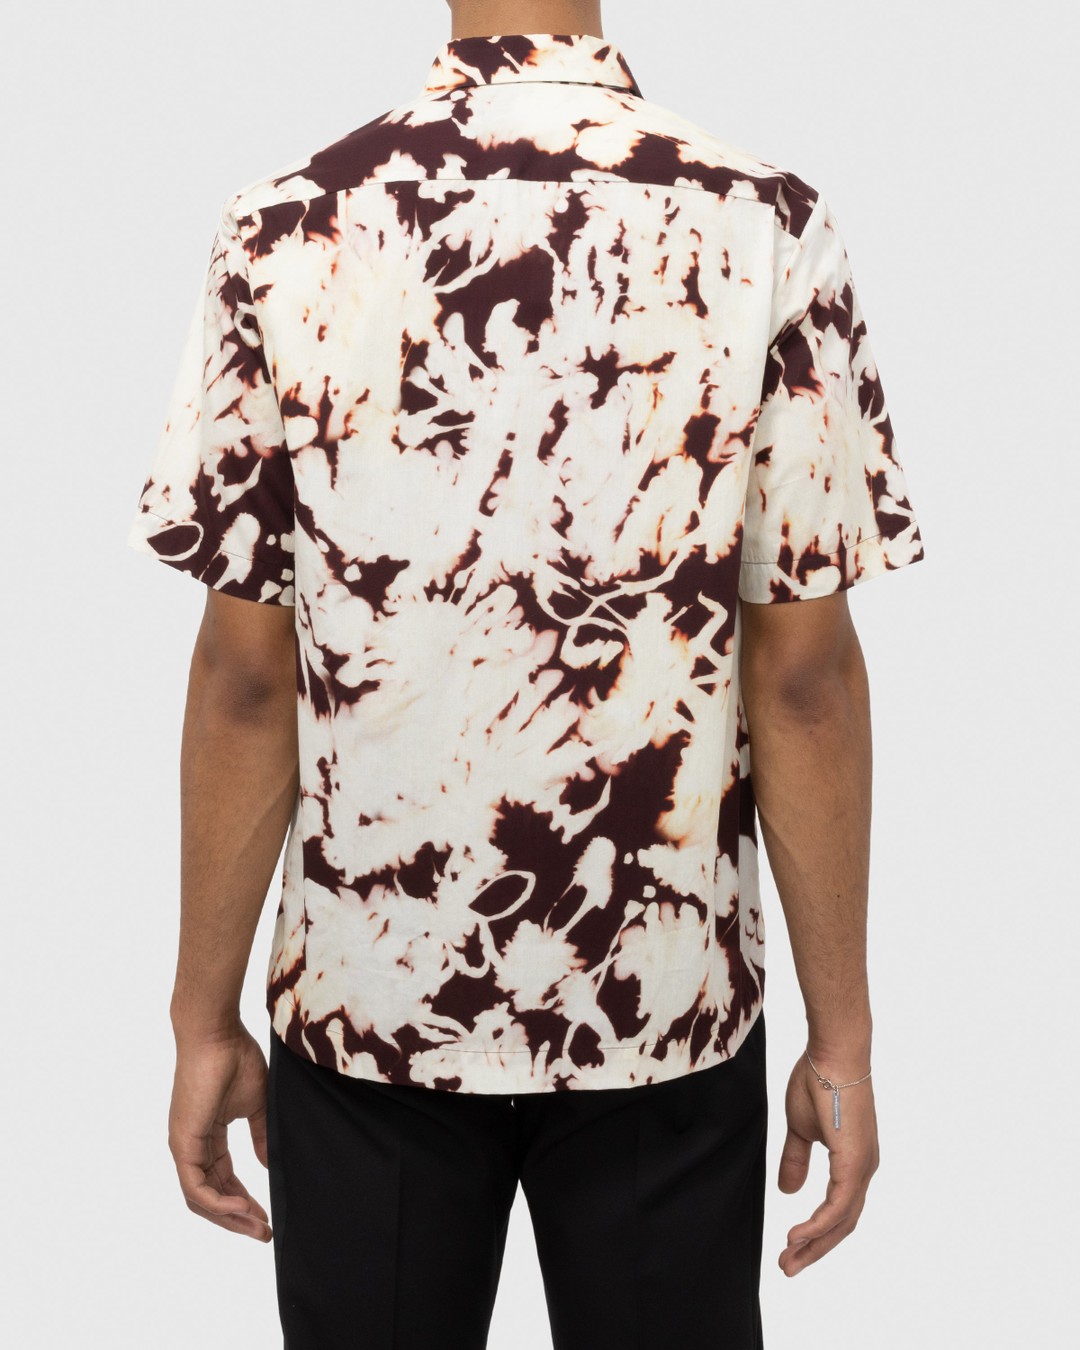 Dries van Noten – Clasen Shirt Multi - Shortsleeve Shirts - Multi - Image 3